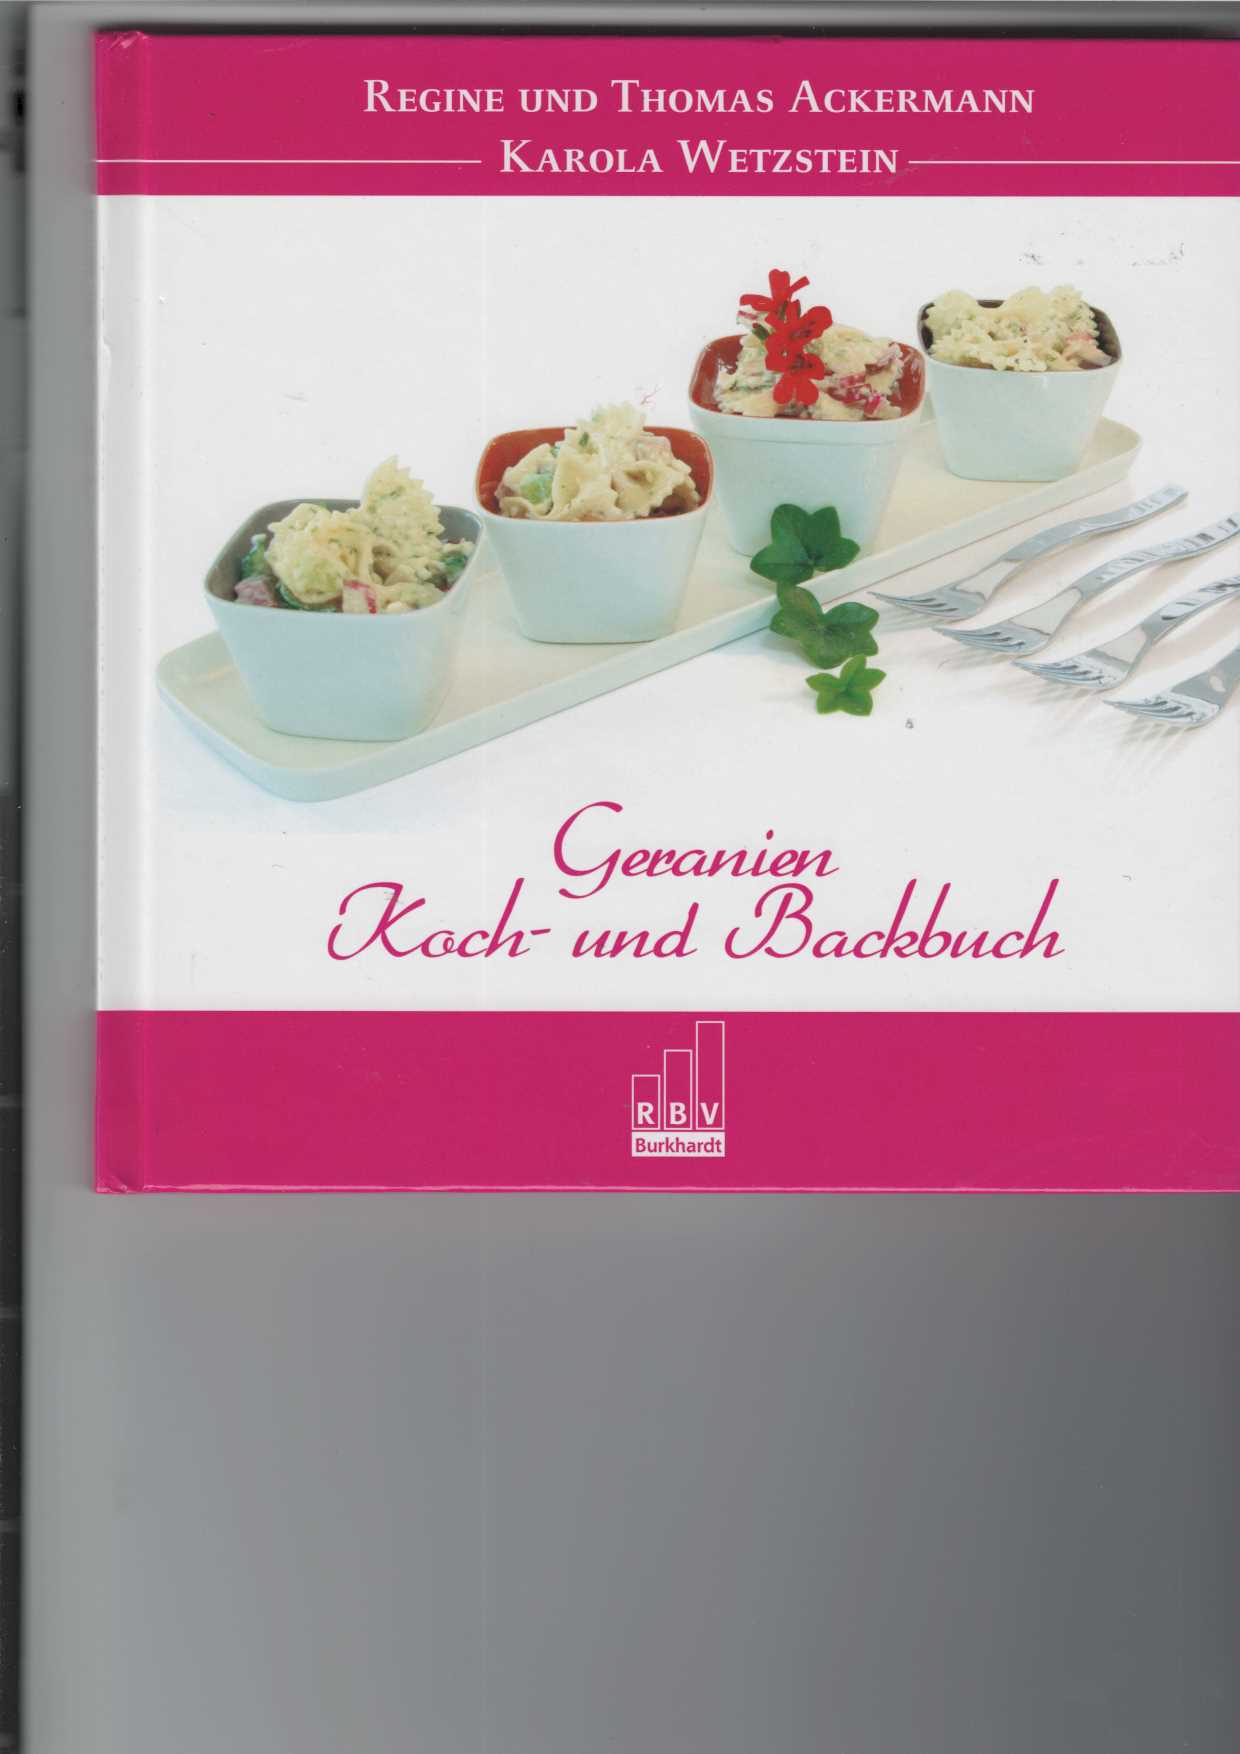 Geranien Koch- und Backbuch. - Ackermann, Regine, Thomas Ackermann und Karola Wetzstein